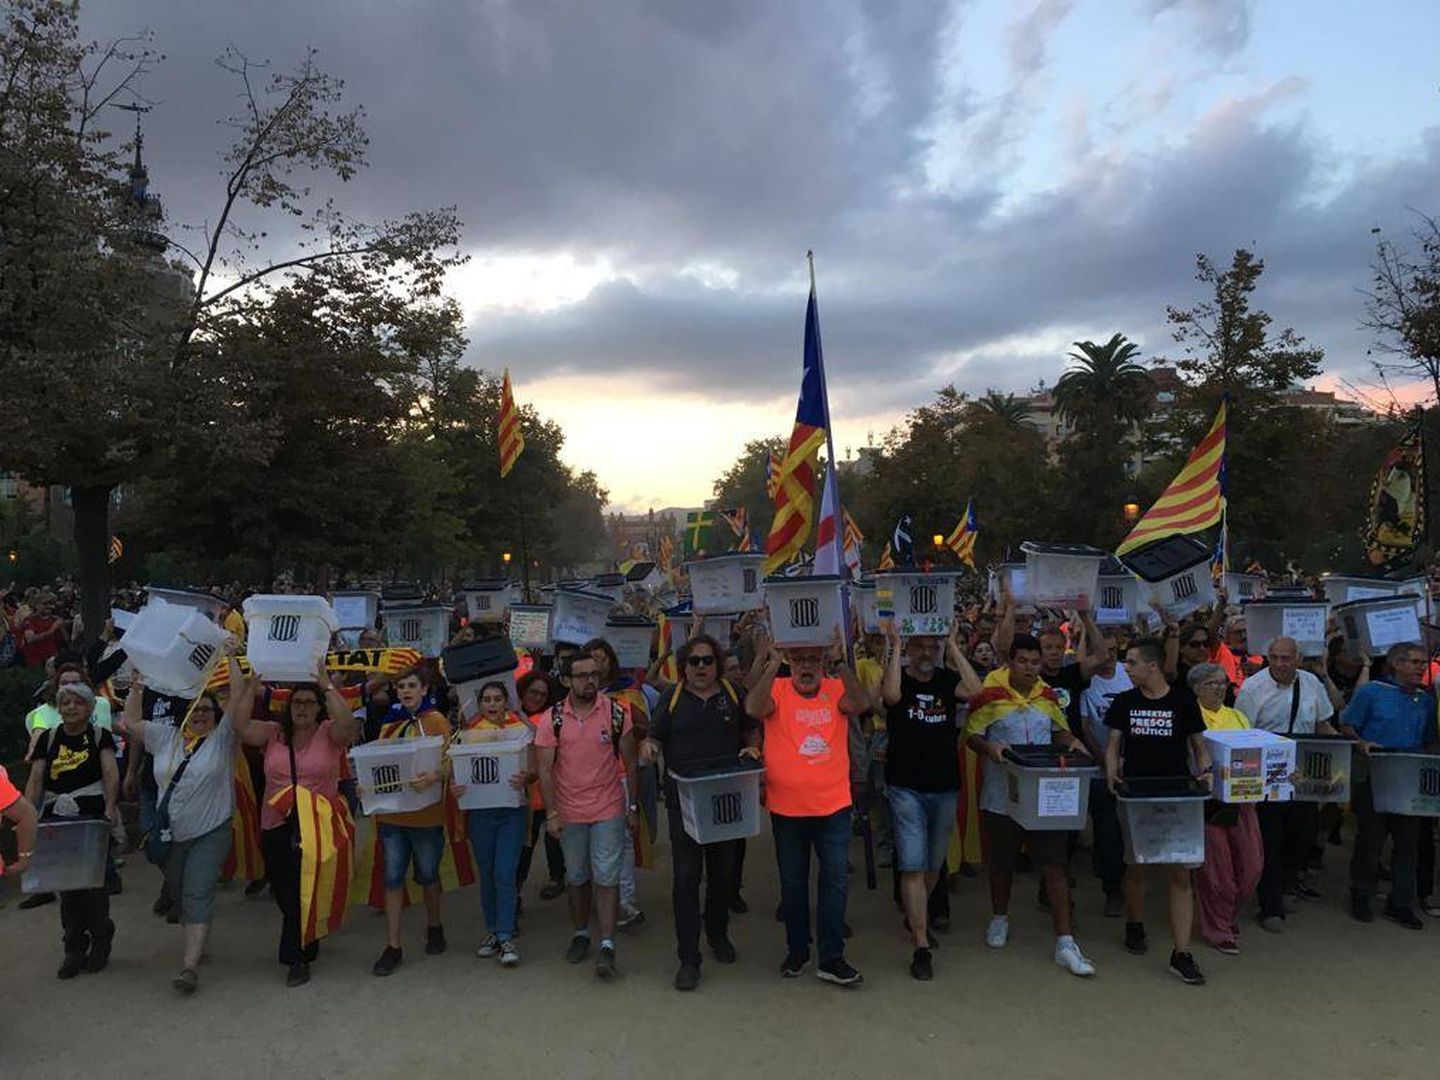 'Vamos a votar, vamos a ganar', es uno de los lemas más repetidos en la manifestación de Barcelona. (Foto: David Brunat)